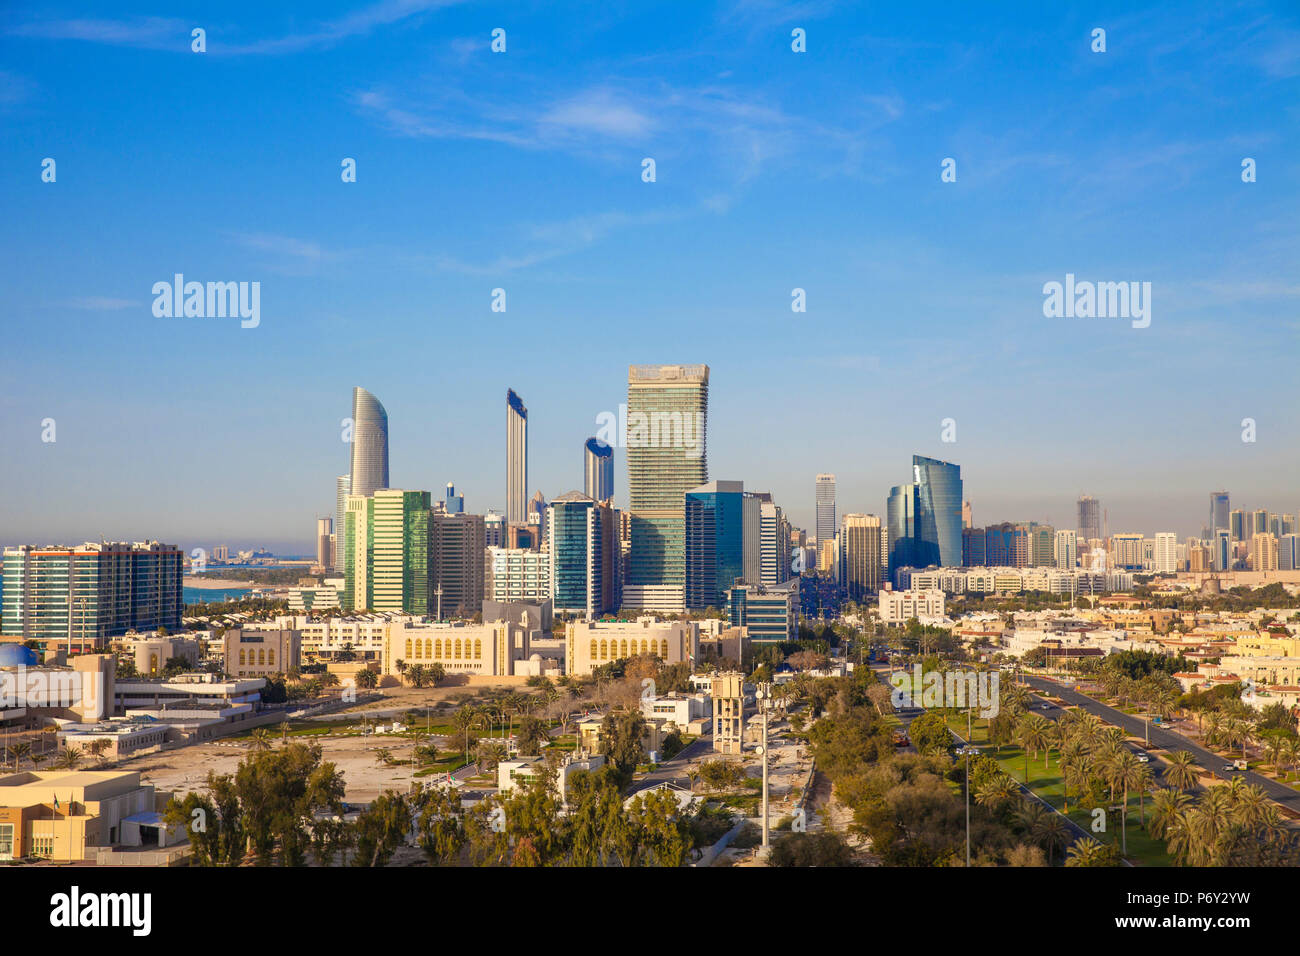 United Arab Emirates, Abu Dhabi, View of City Skyline Stock Photo